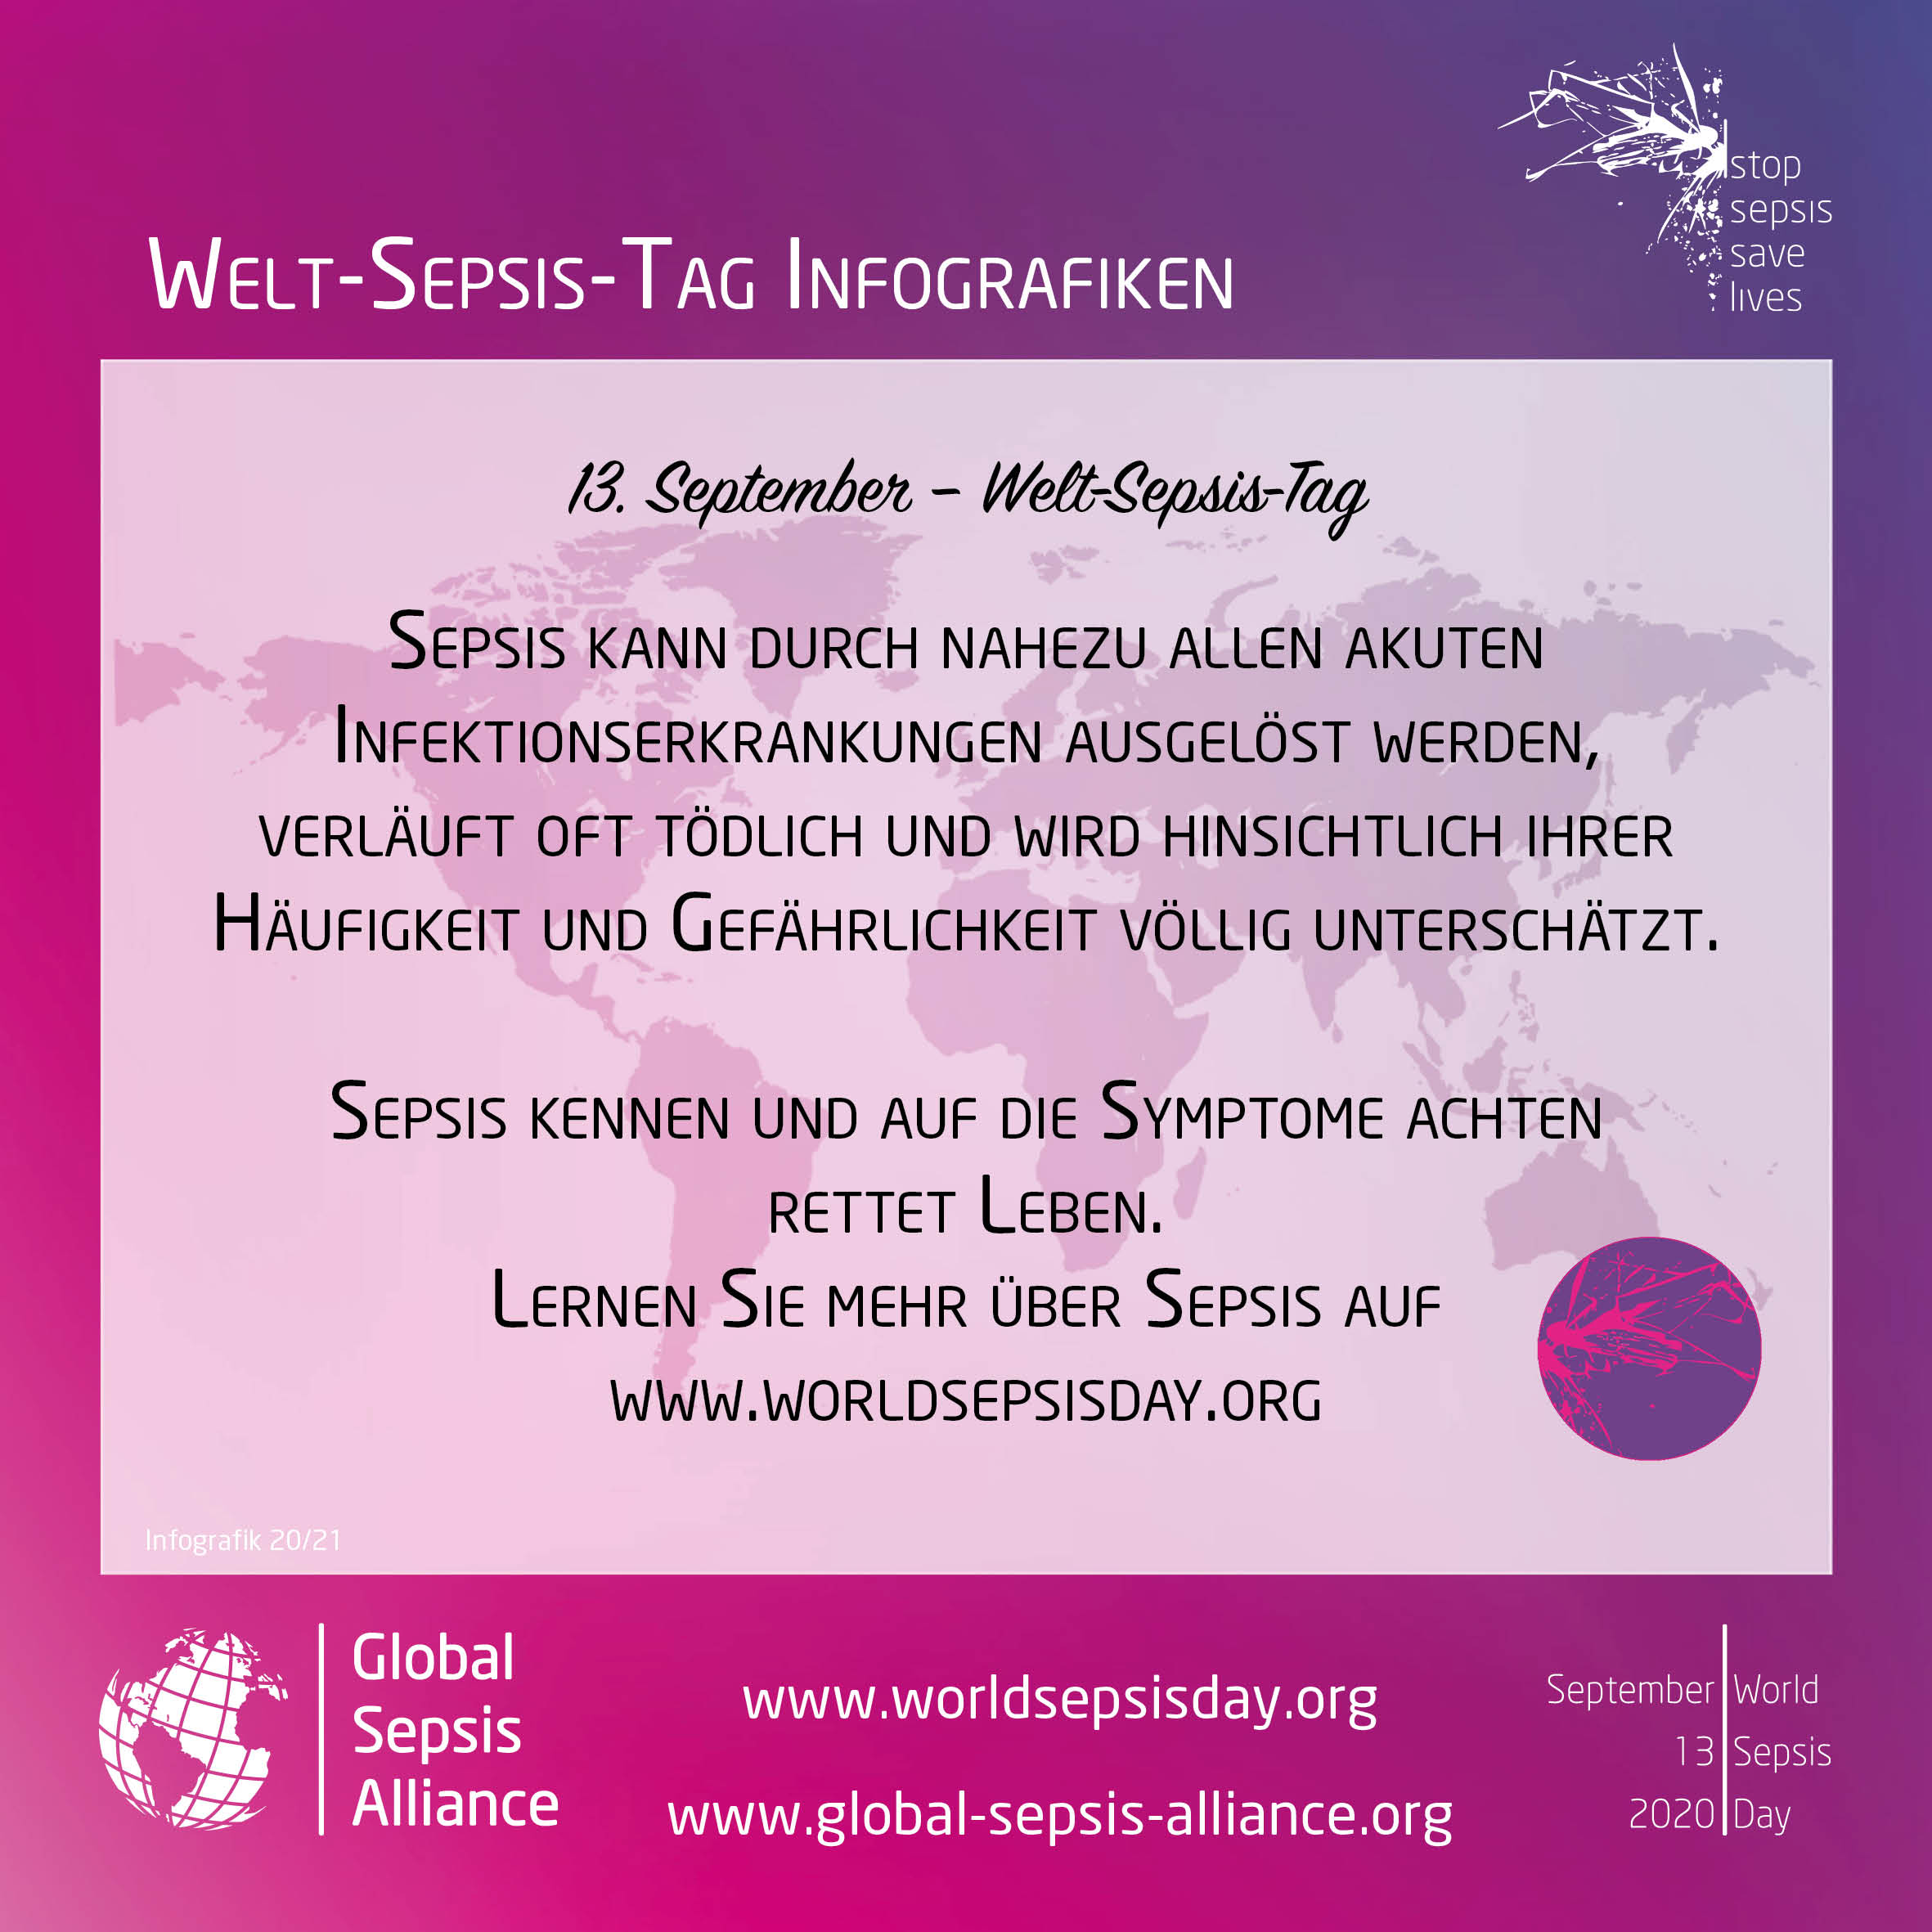 Welt-Sepsis-Tag am 13. September